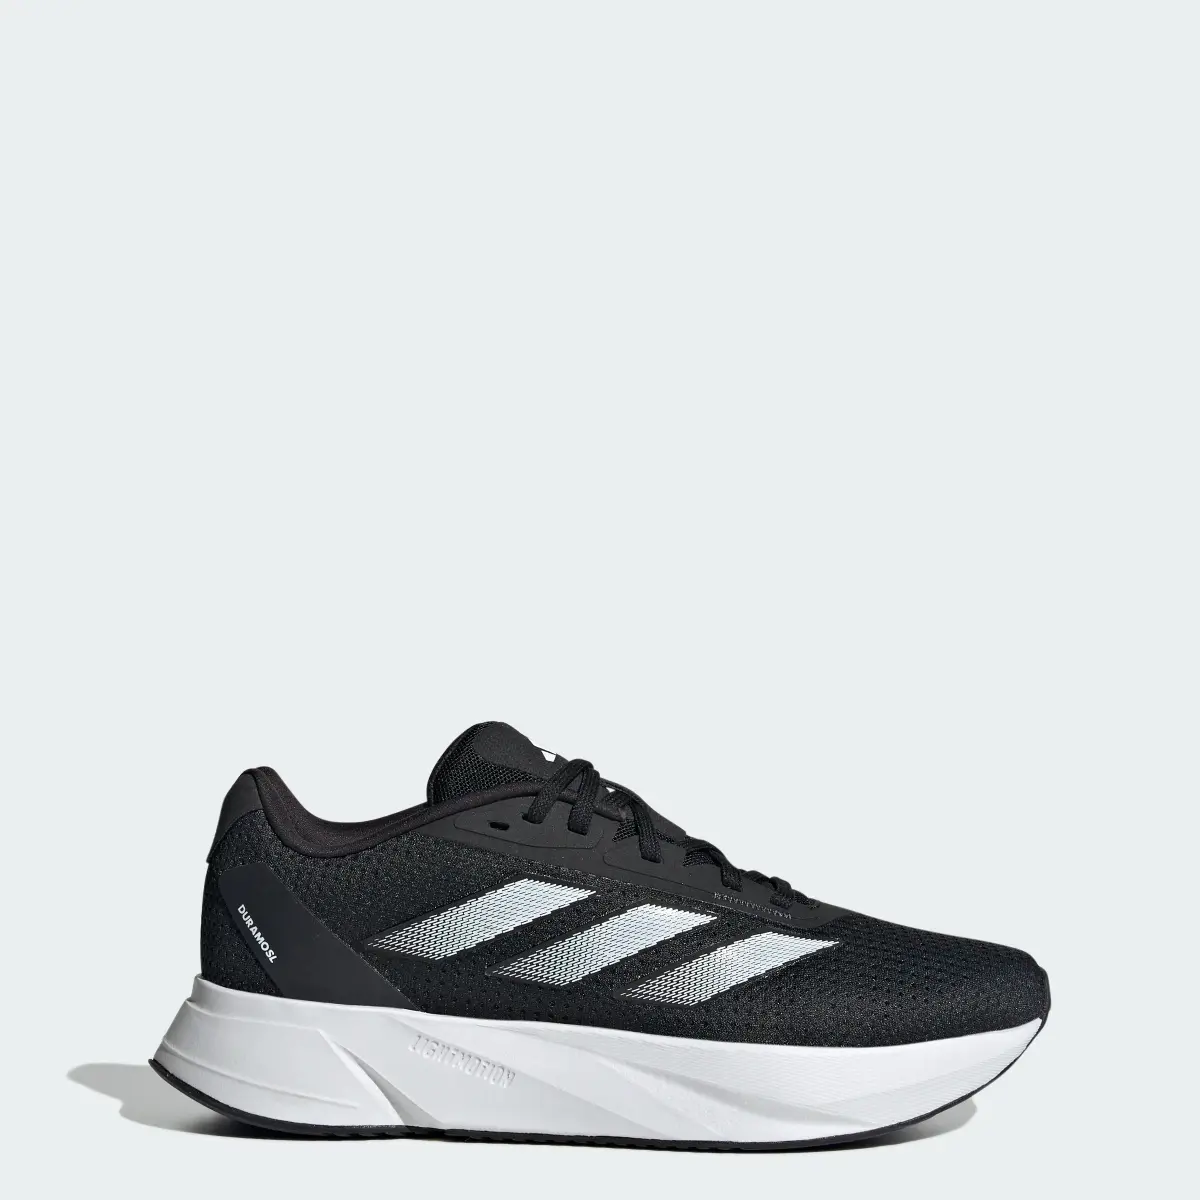 Adidas Duramo SL Running Shoes. 1